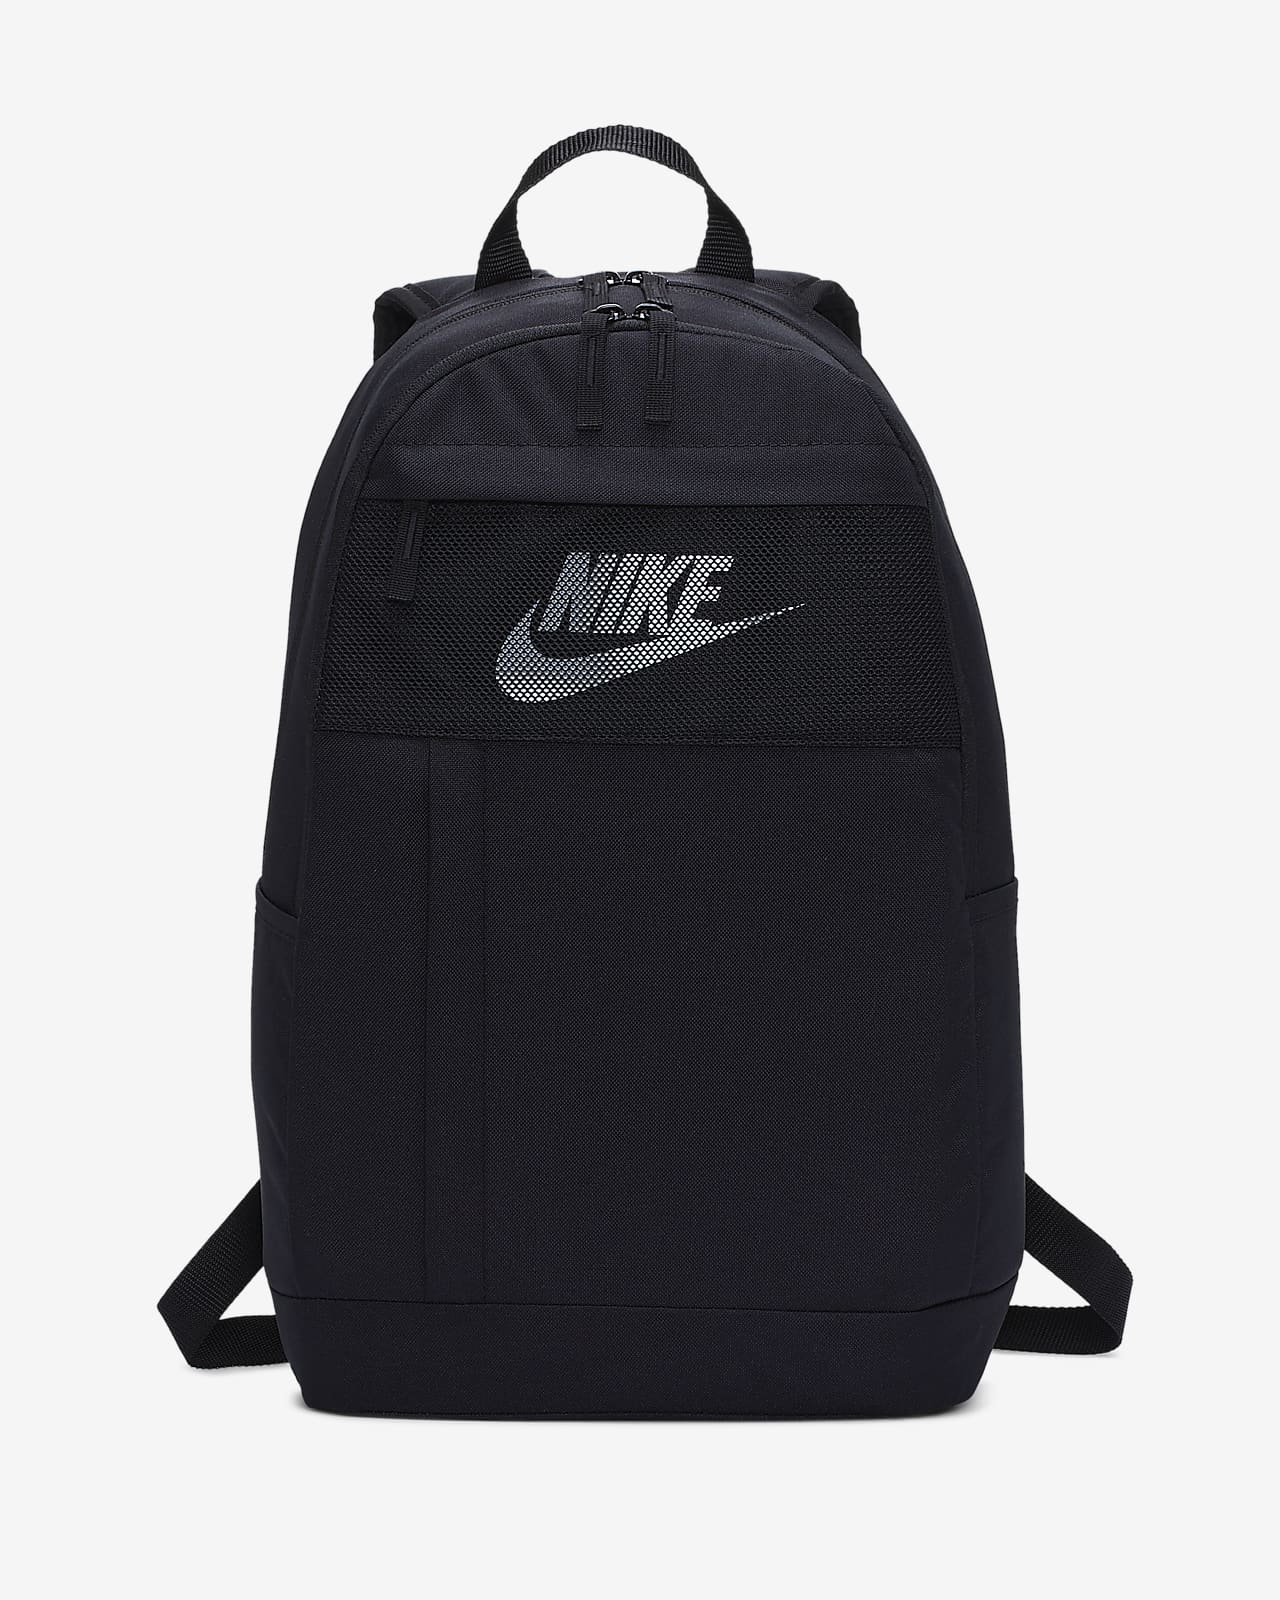 black nike backpack